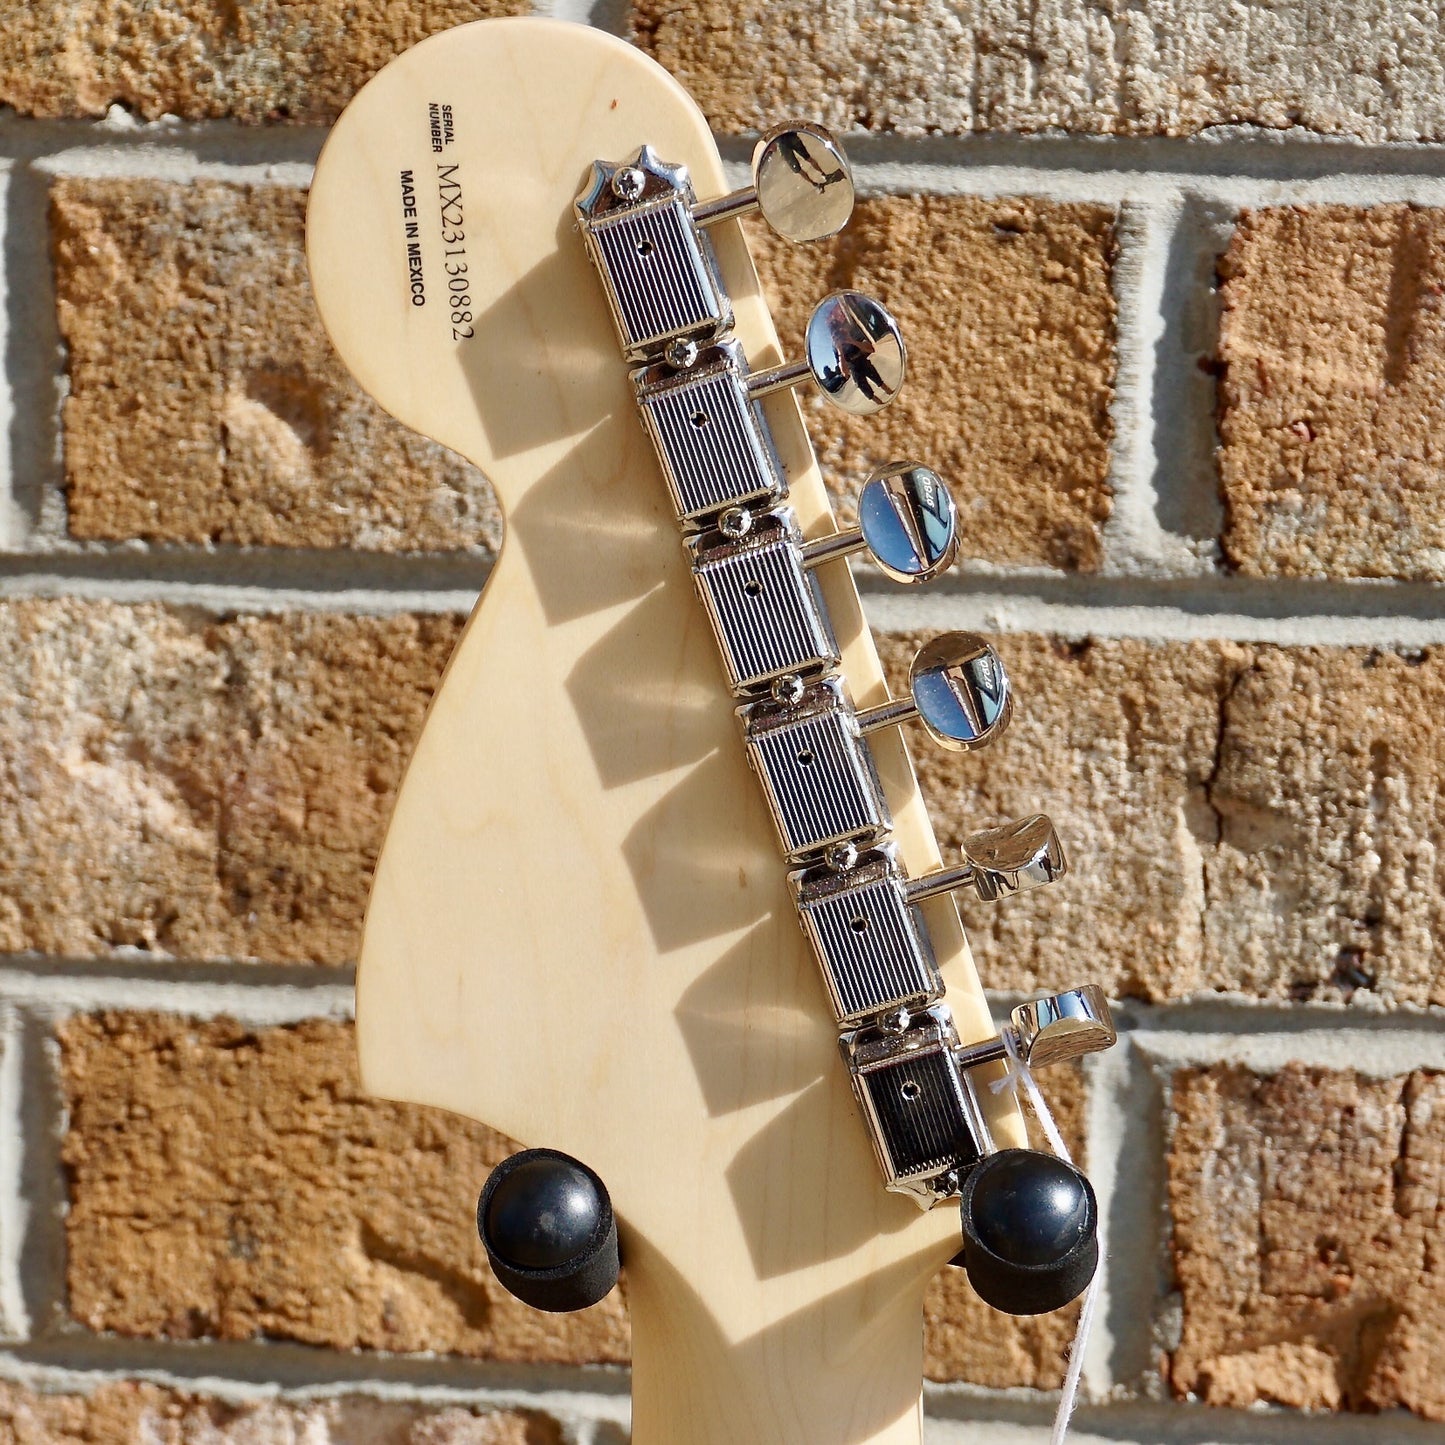 Fender Limited Edition Tom DeLonge Stratocaster Rosewood Fingerboard Surf Green